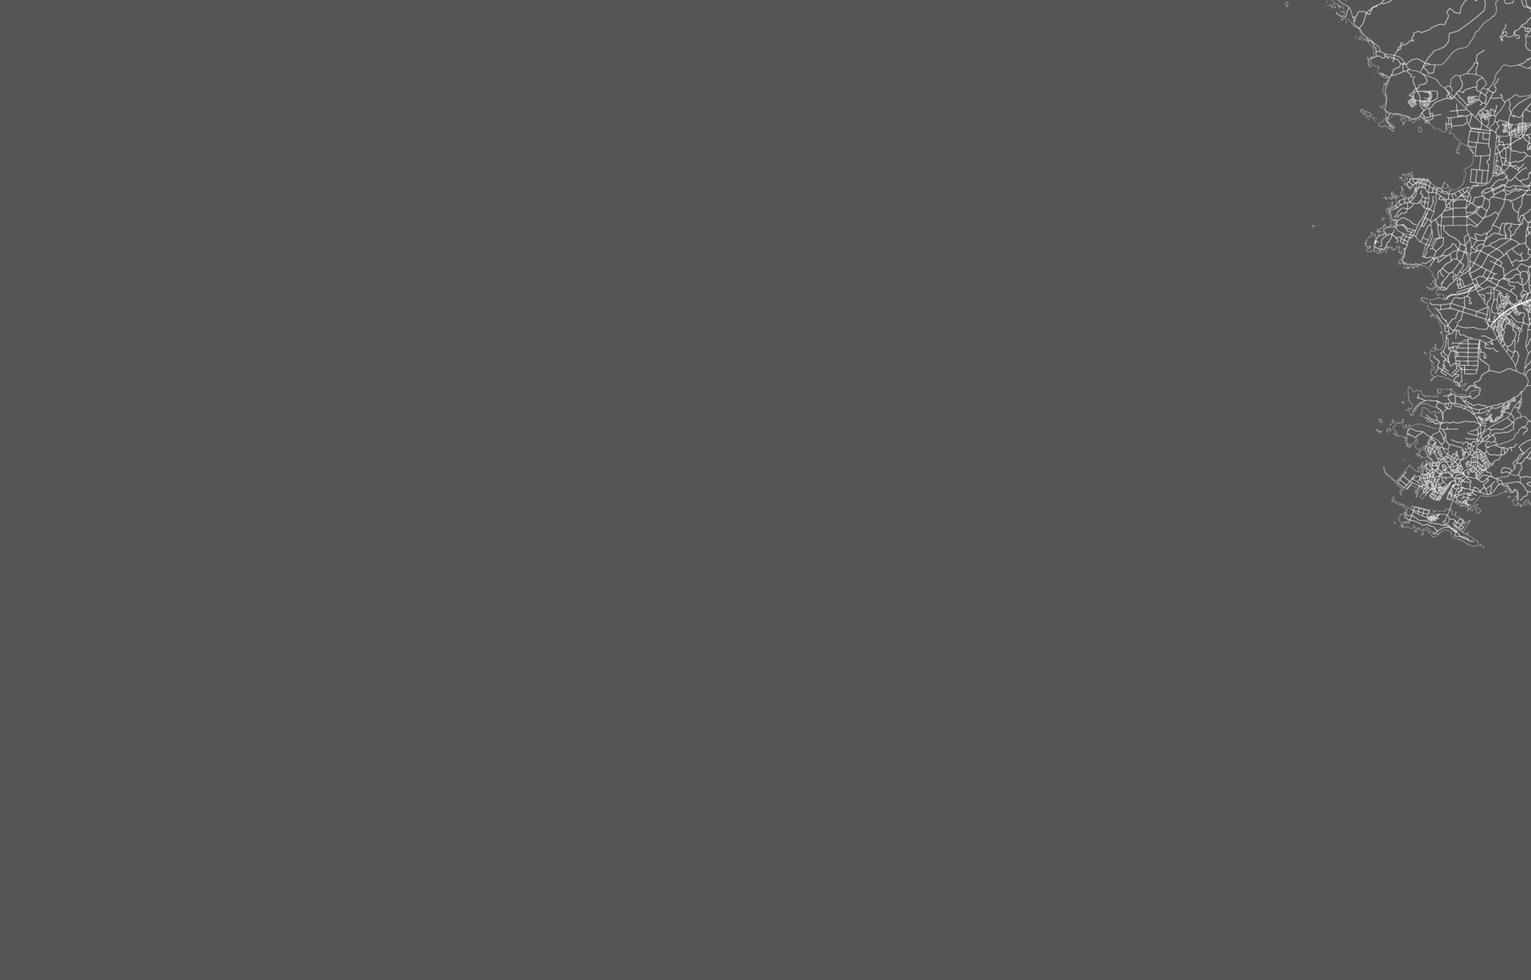 carte de la ville du japon. illustration vectorielle avec fond noir, contour blanc, scène avec la ville du japon, ville, route, rue, carte urbaine, emplacement, point de repère, transport. conception pour impression, affiche, papier peint. vecteur